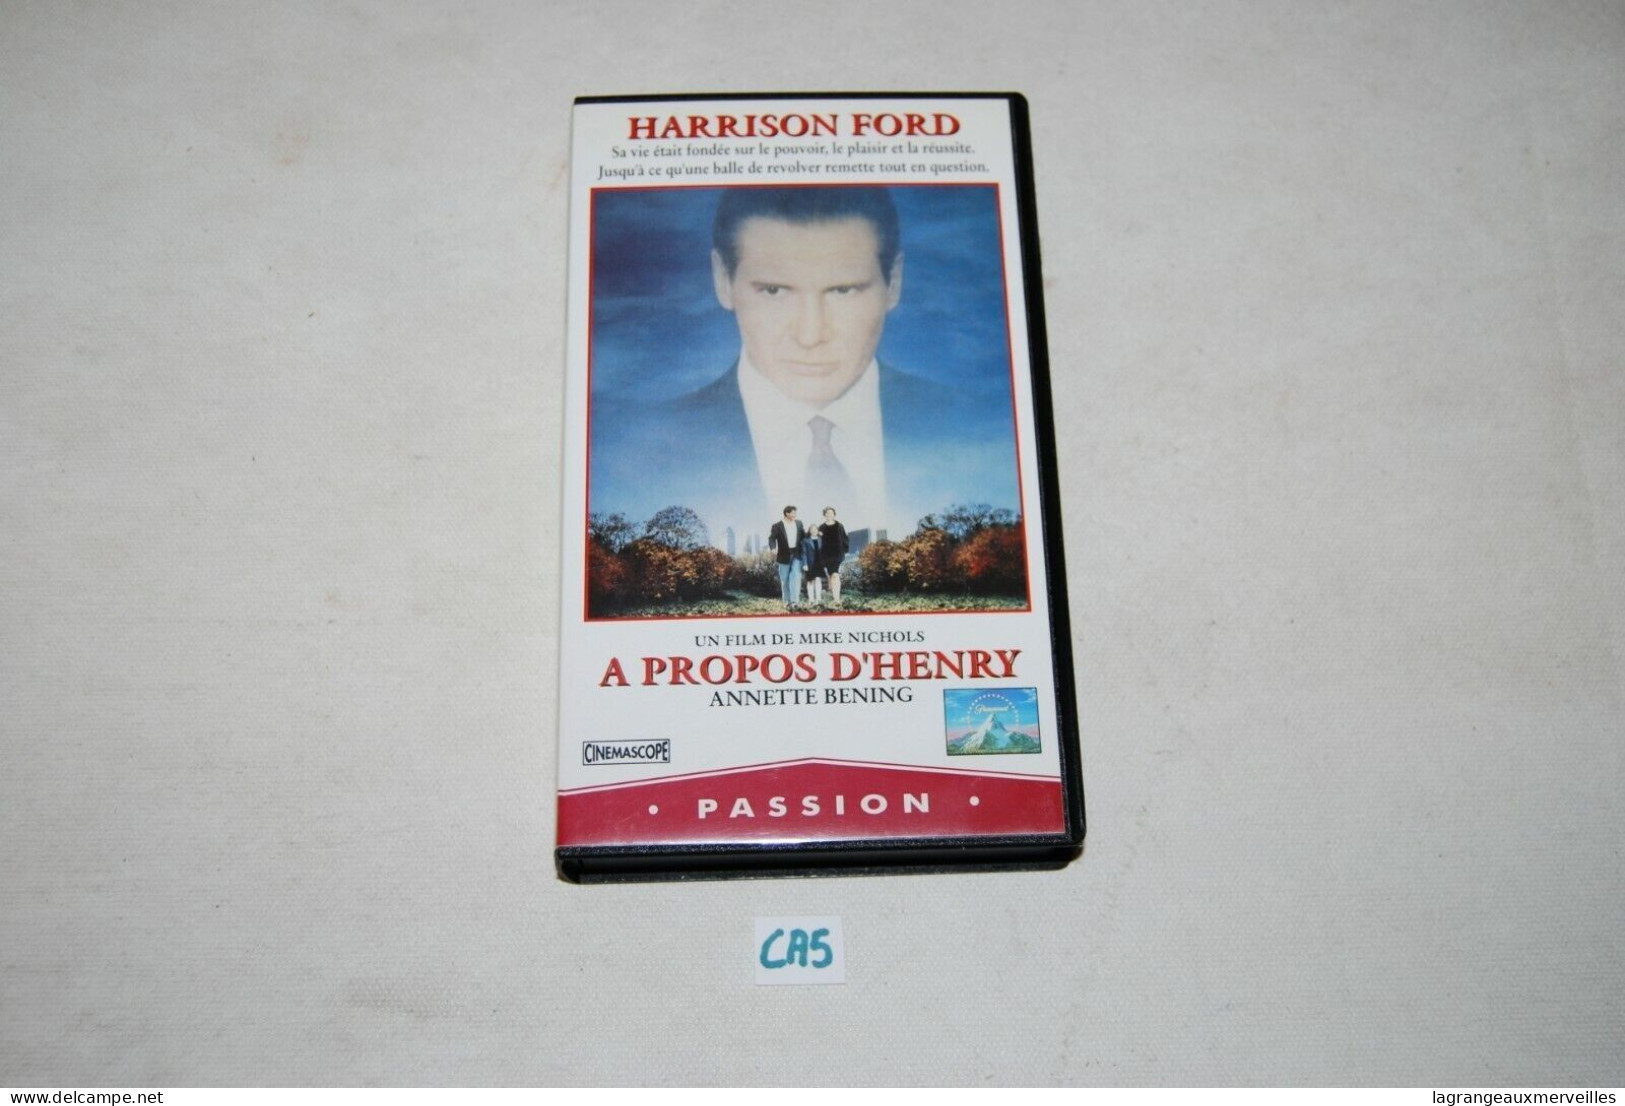 CA5 Cassette Vidéo - A PROPOS D HENRY HARRISON FORD - Drama